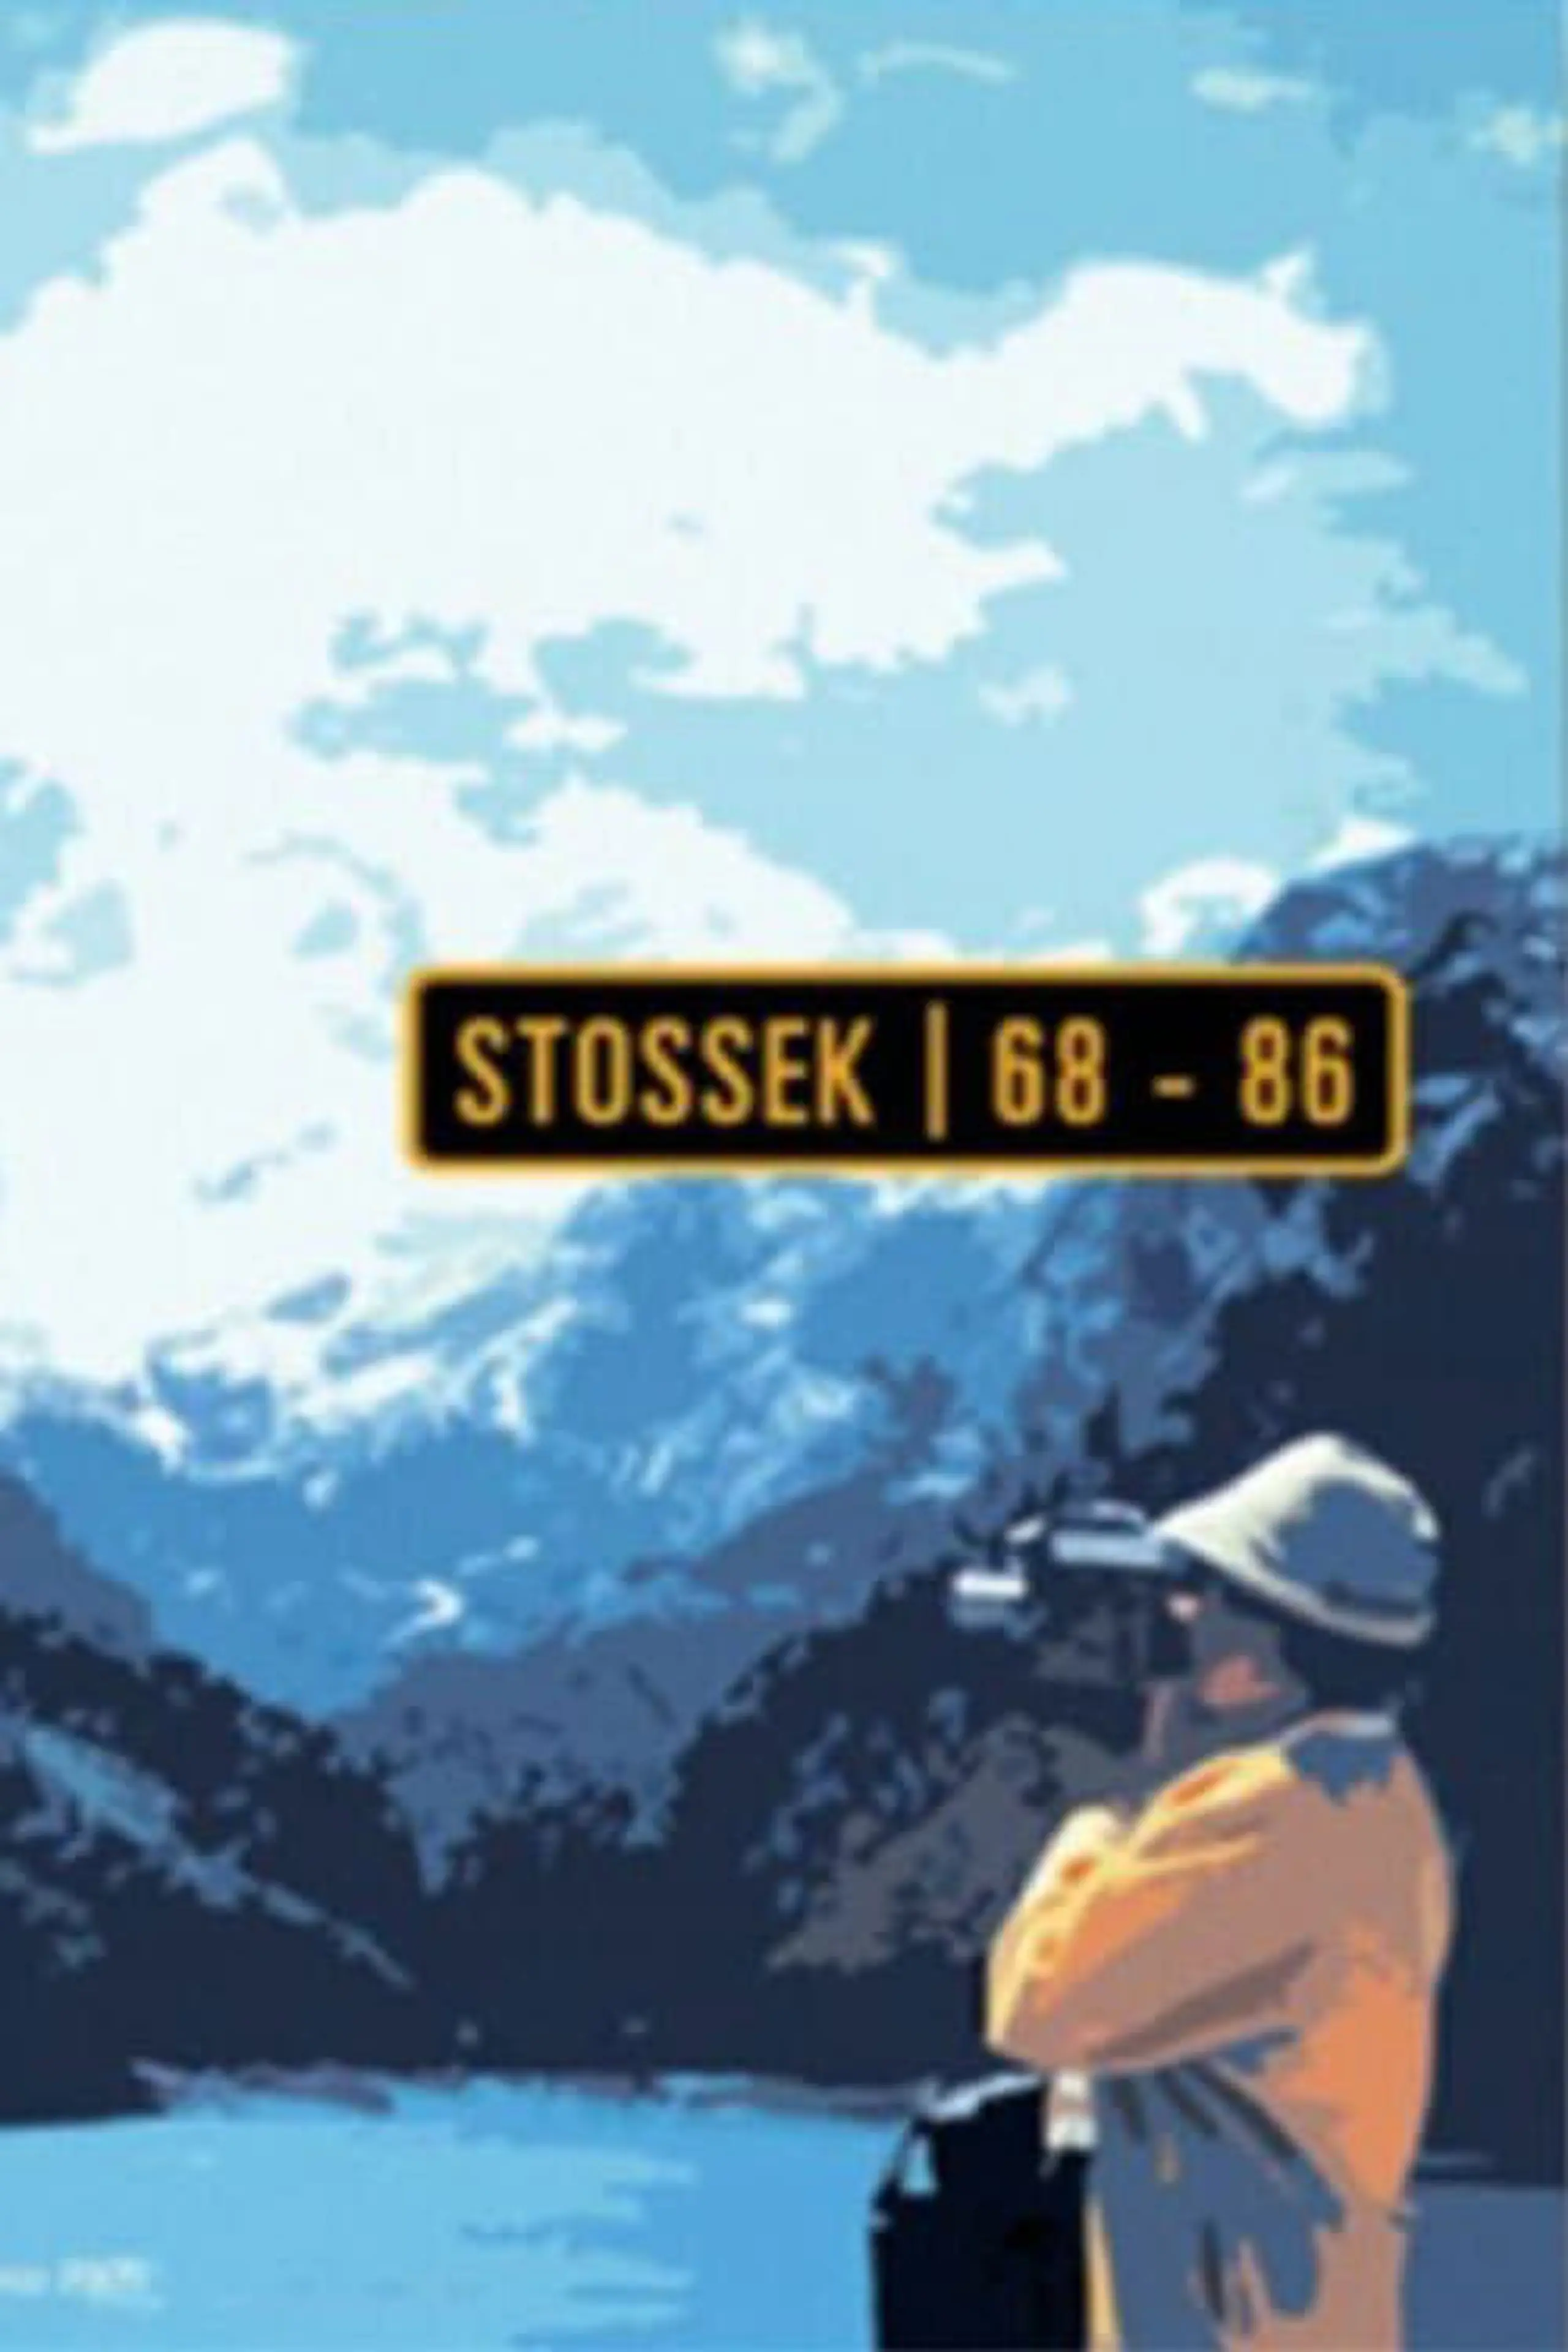 Stossek 68-86